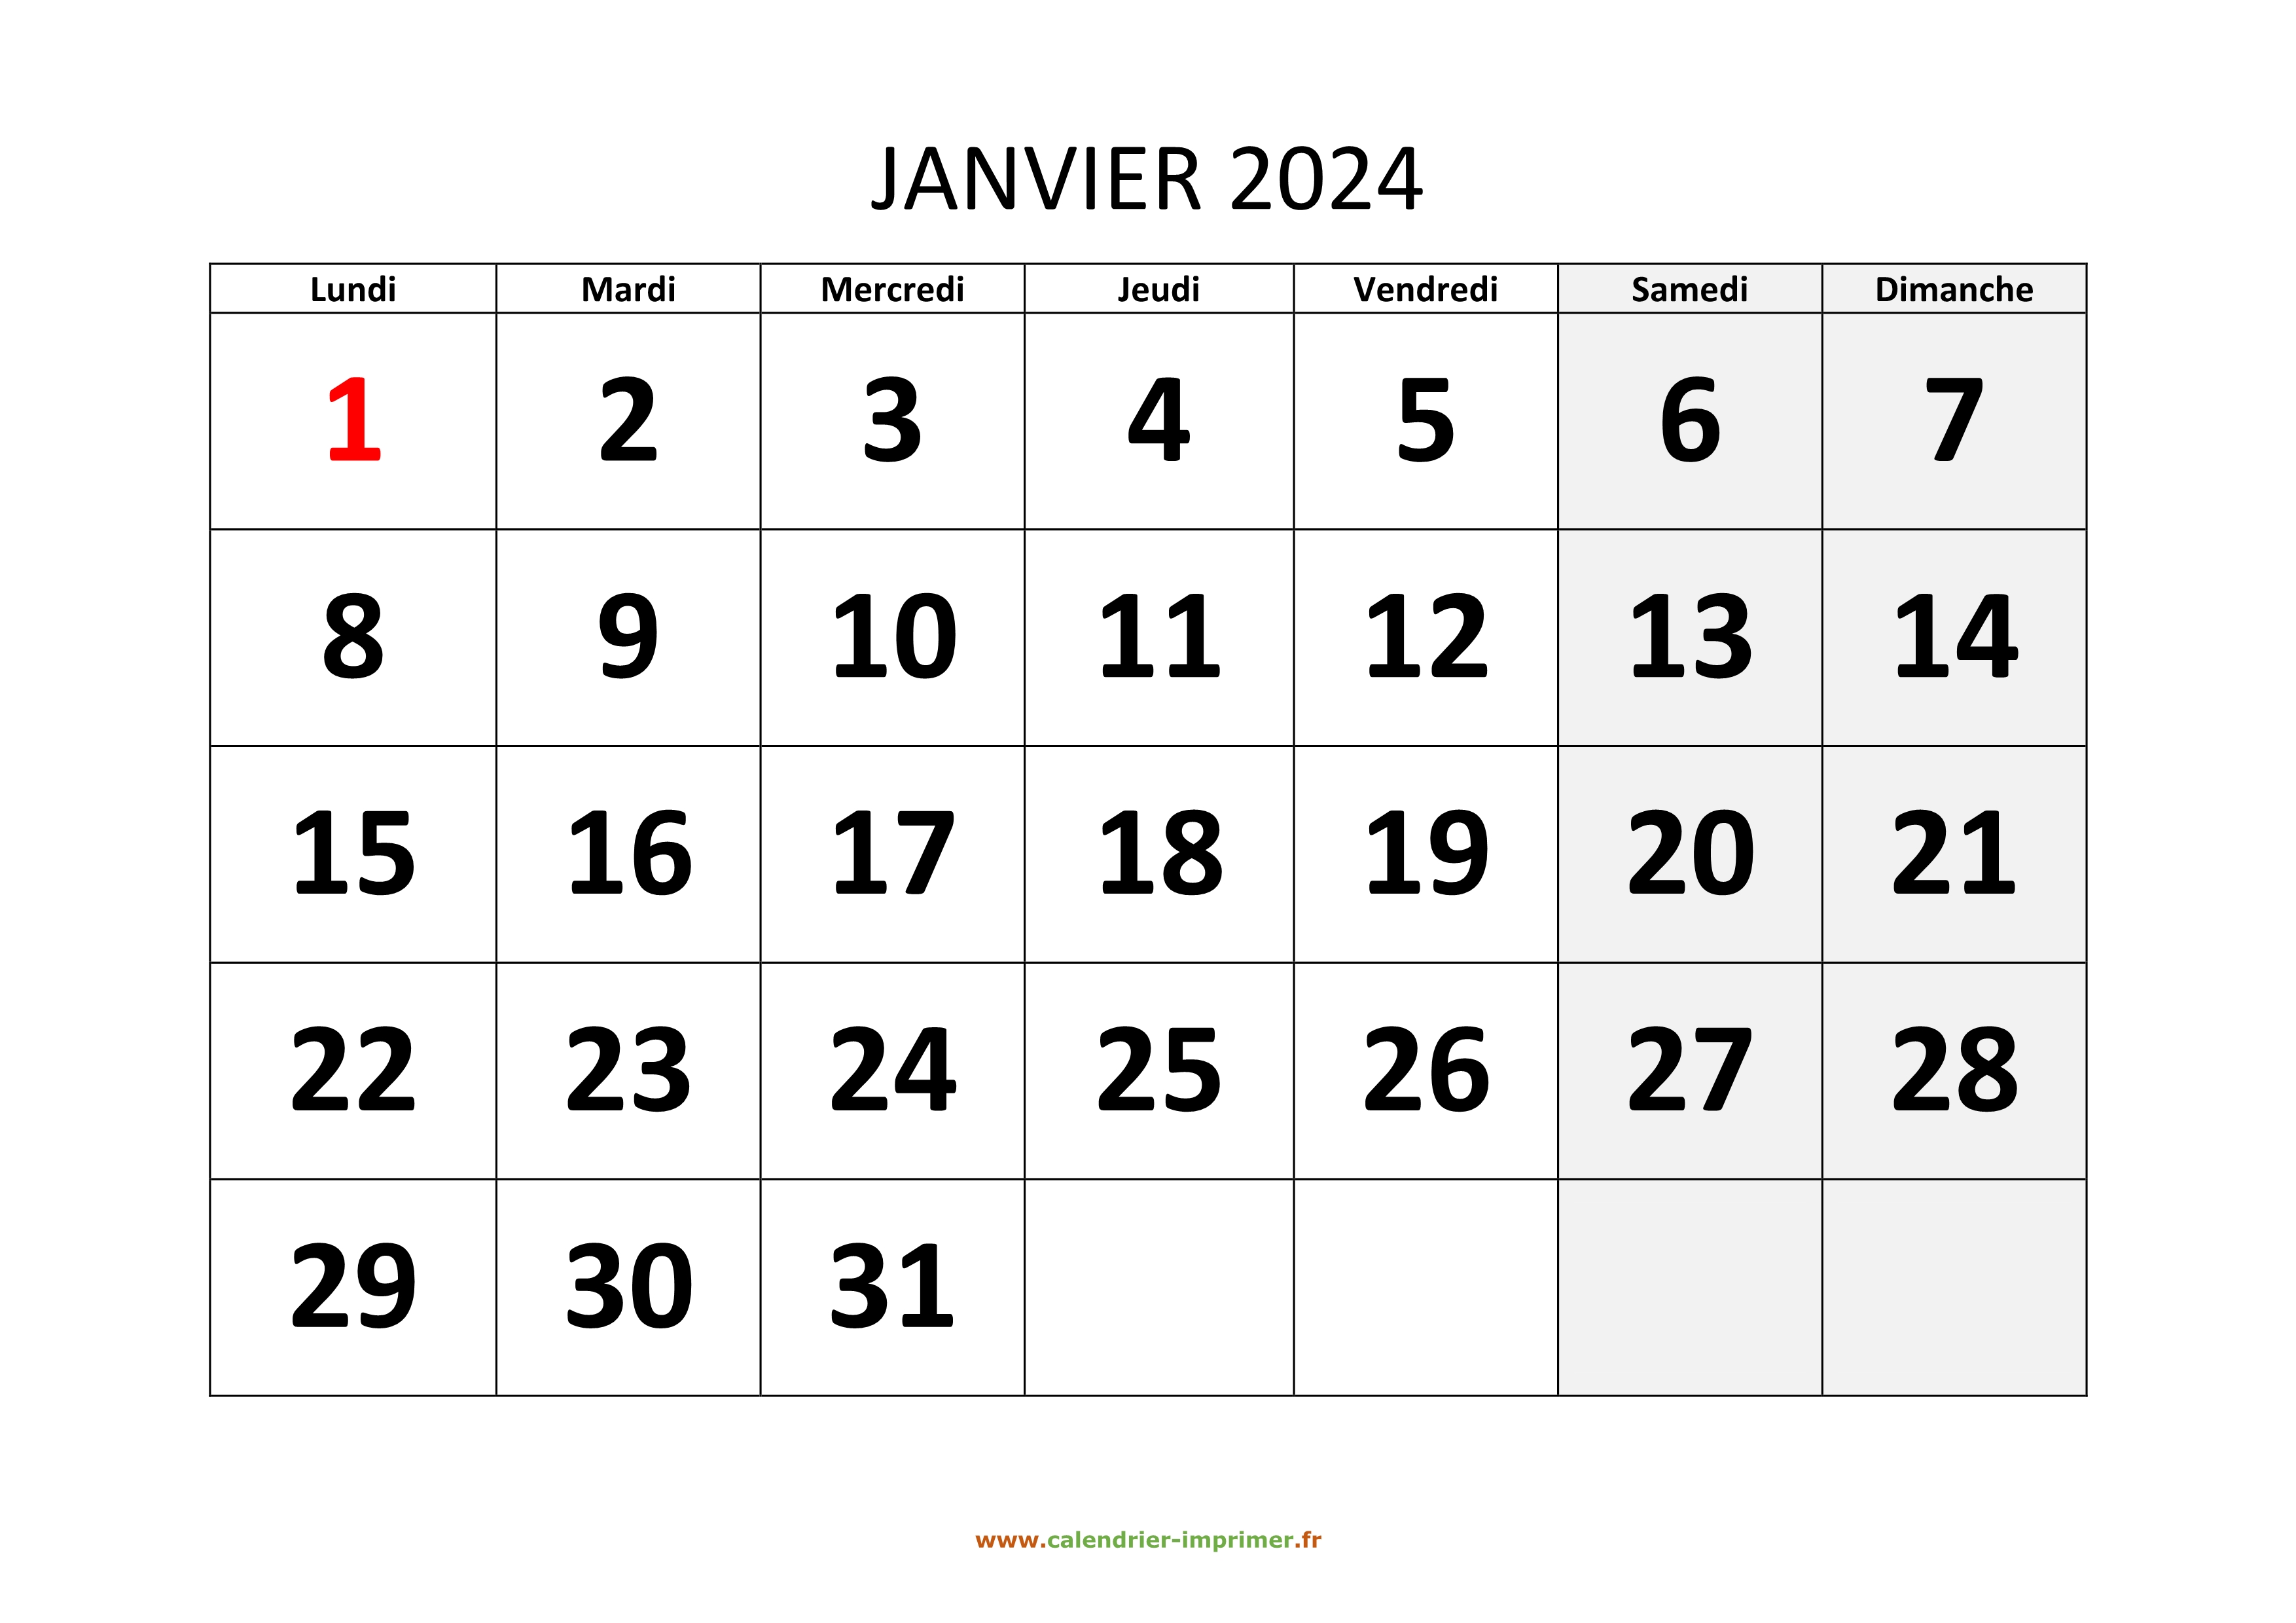 CALENDRIER 2024 JANVIER ET FEVRIER